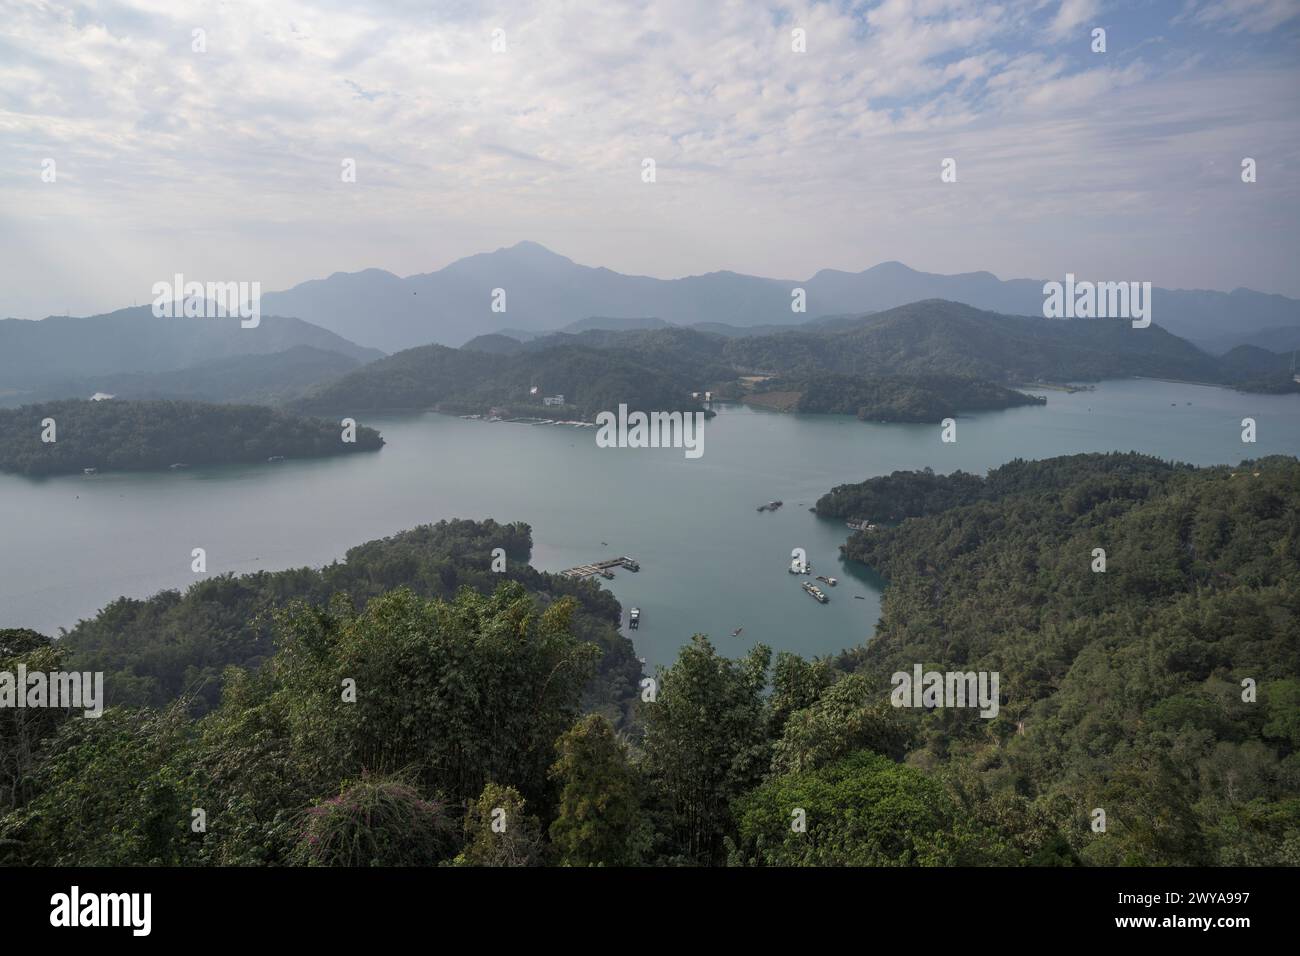 Ein ruhiger Blick aus der Luft auf einen riesigen See, umgeben von üppigen grünen Hügeln und bewölktem Himmel Stockfoto